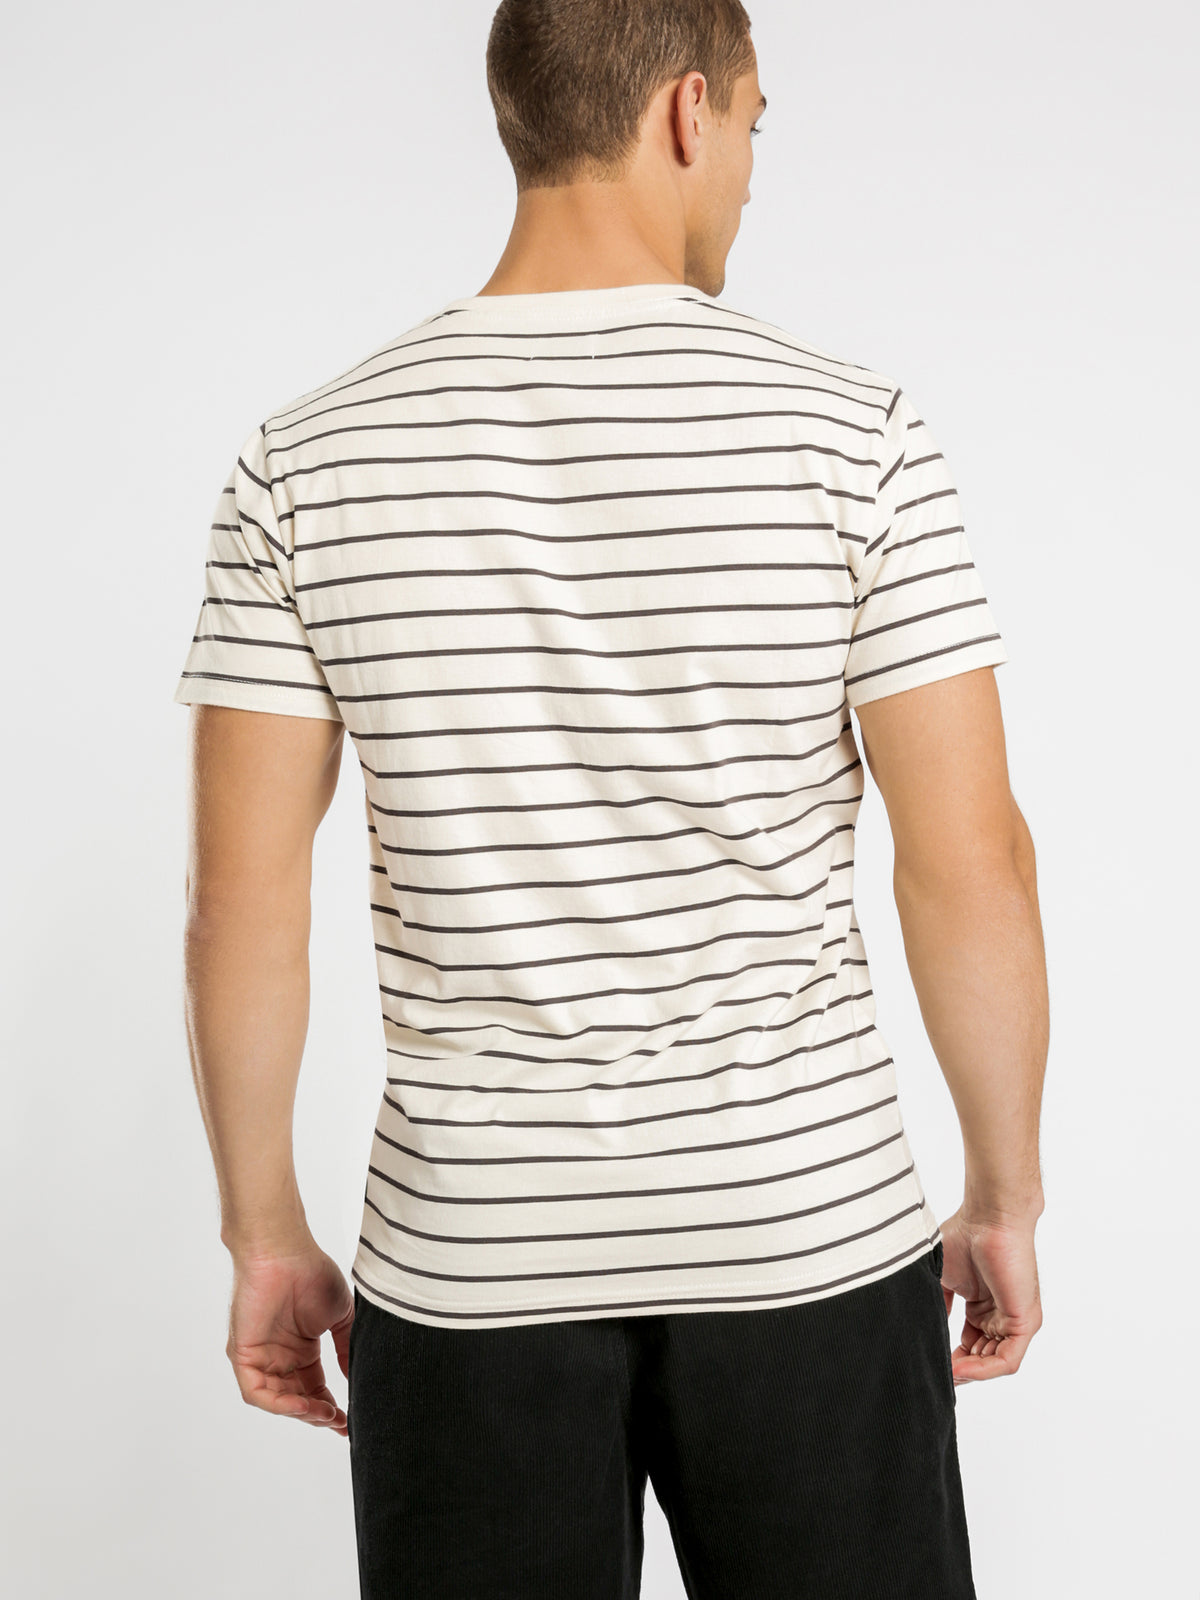 Casper Stripe T-Shirt in Stone